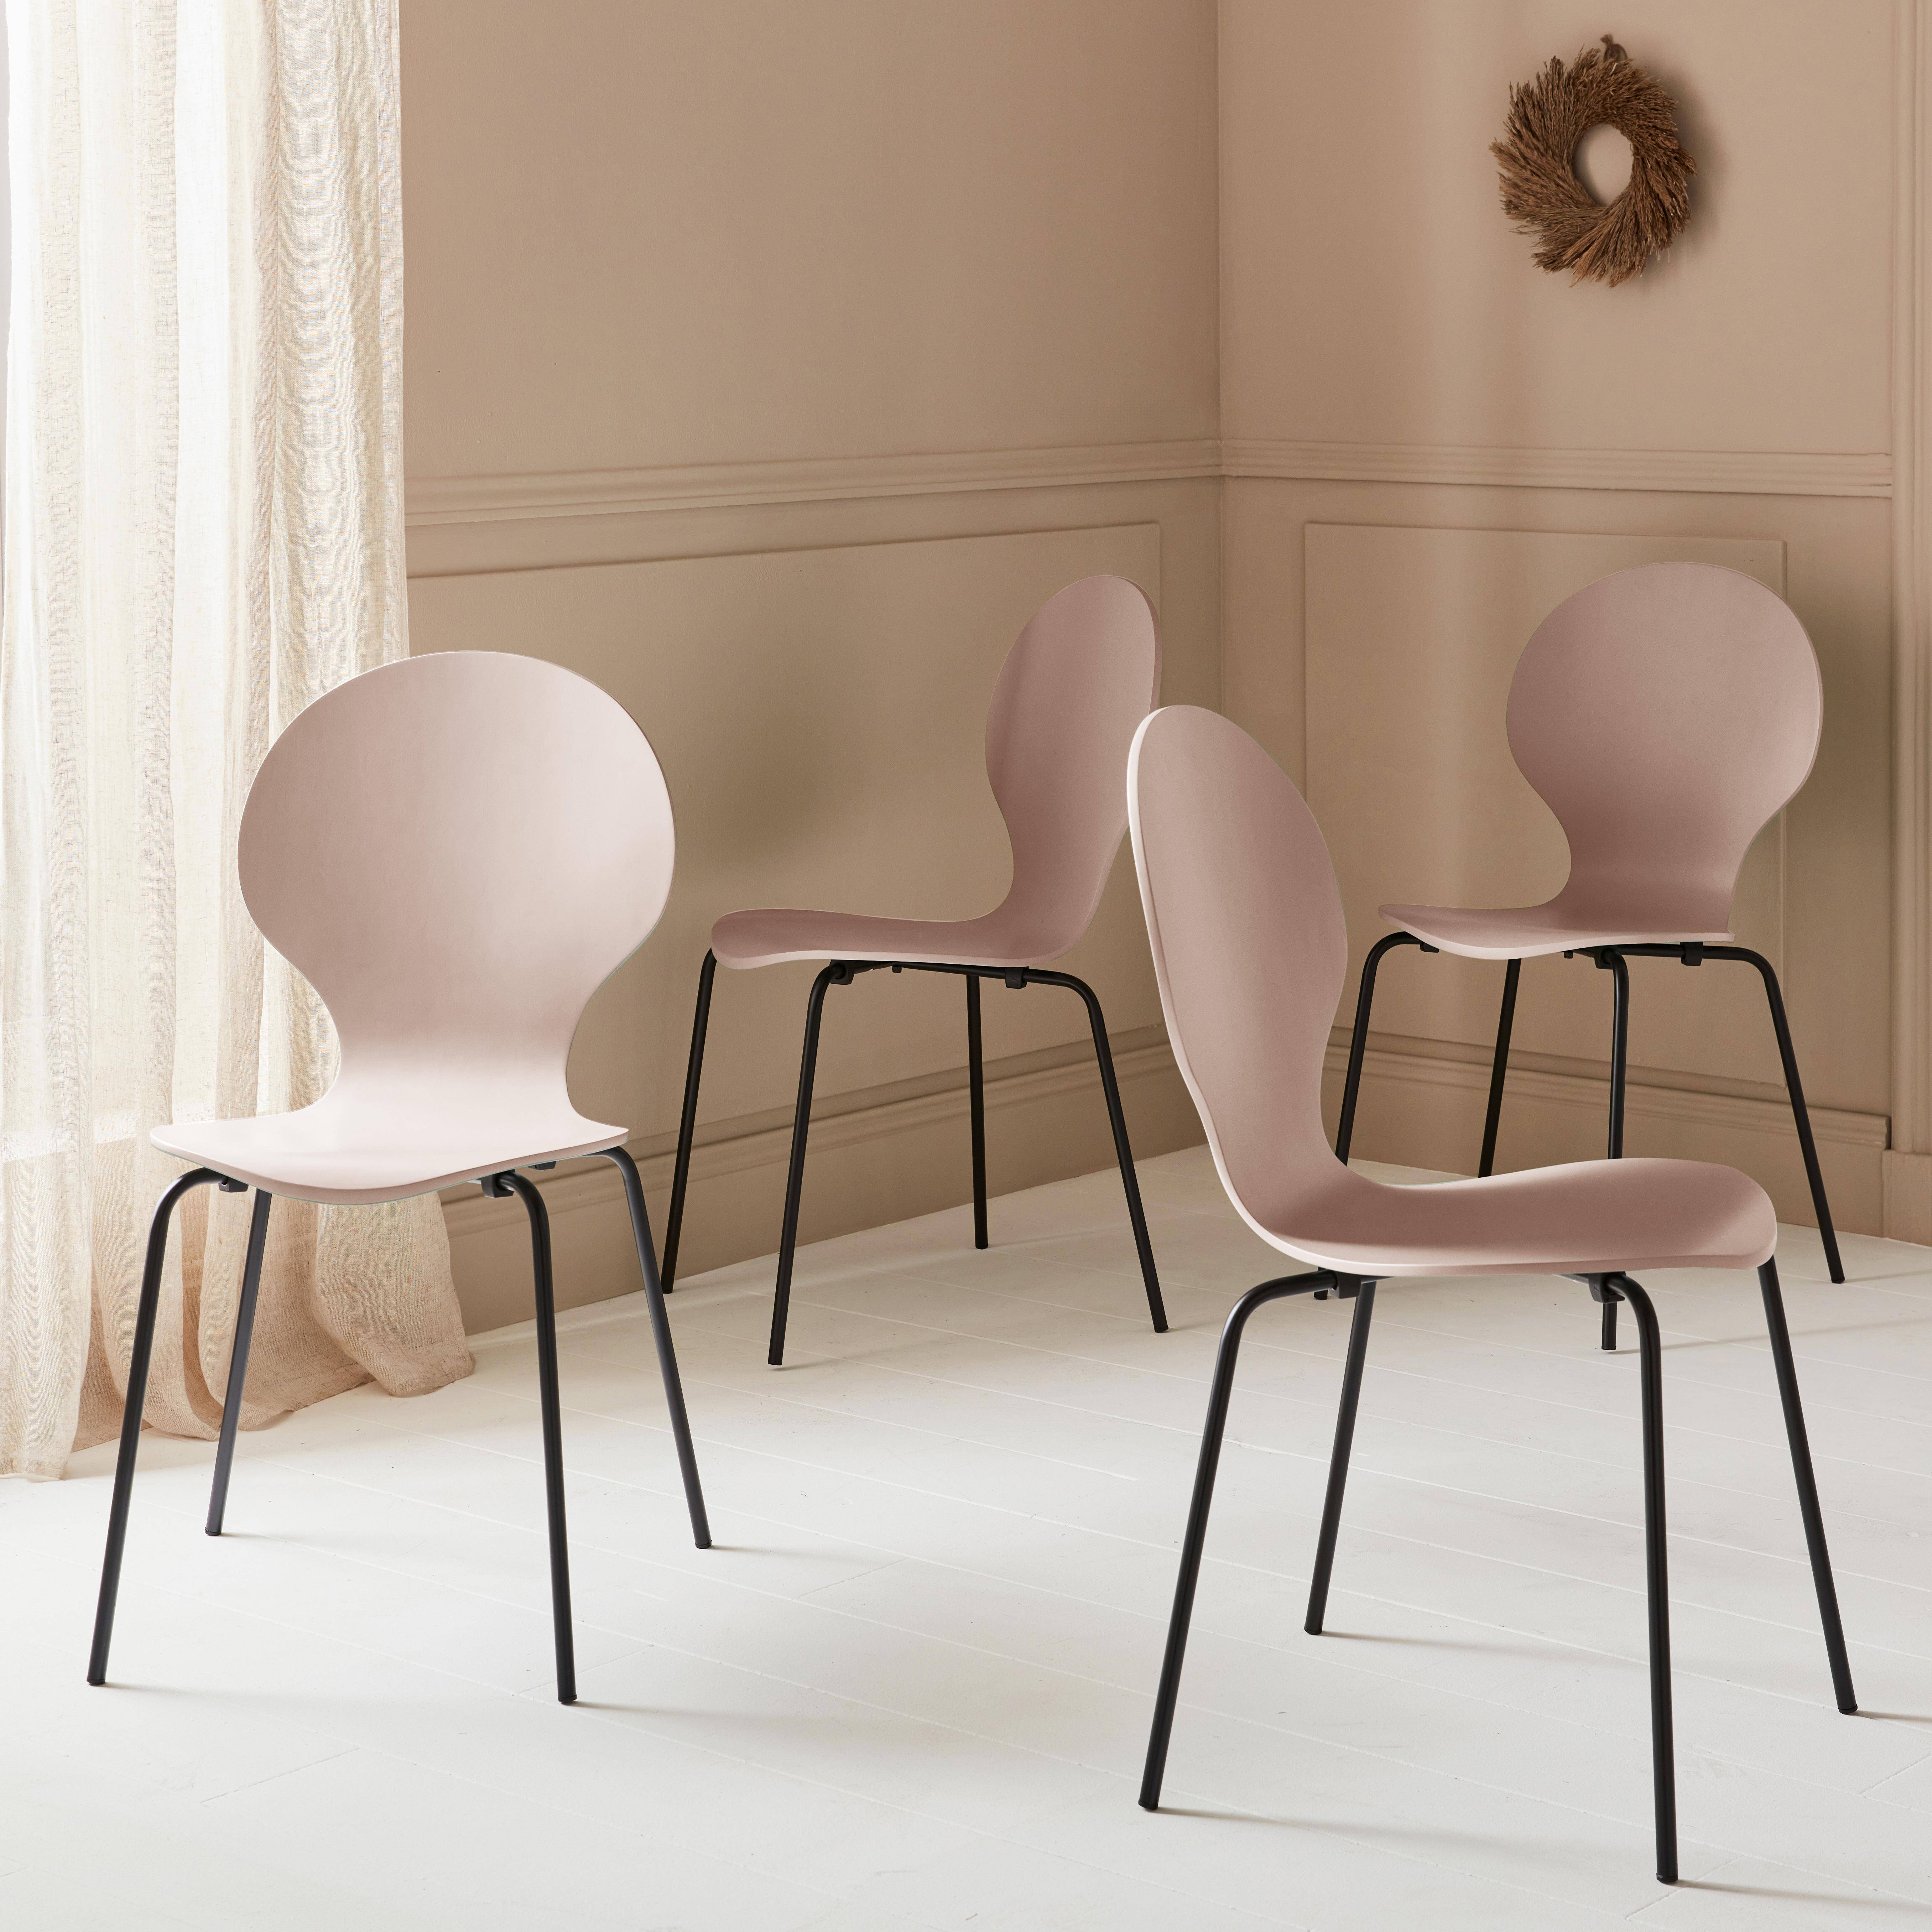 4er Set stapelbare Retro-Stühle in Rosa ,  Hevea-Holz und Sperrholz, Beine aus Stahl, Naomi, B 43 x T 48 x H 87cm Photo1